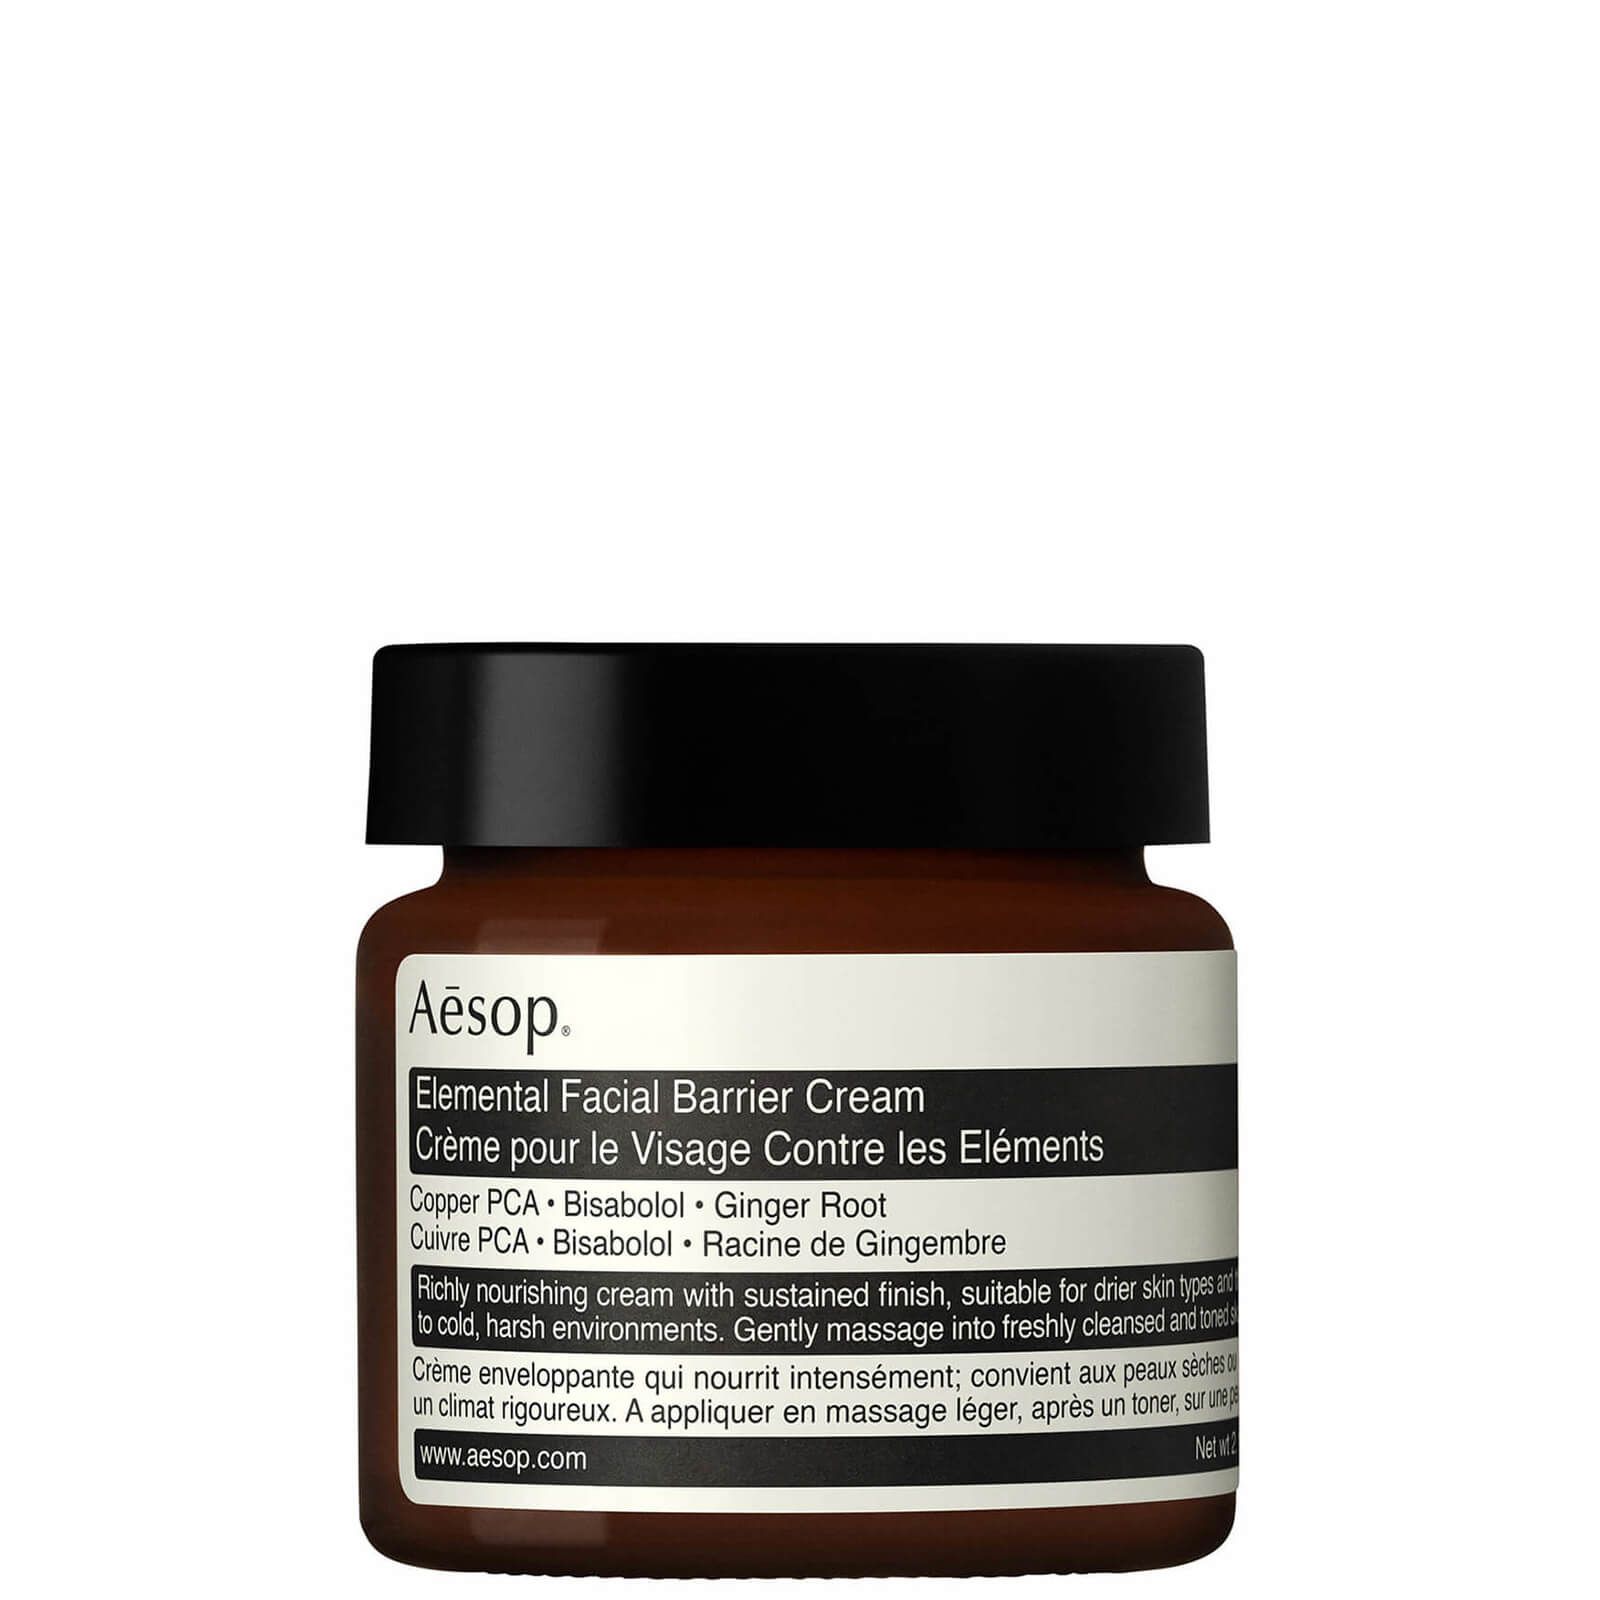 Aesop Elemental Facial Barrier Cream (60ml) | Cult Beauty (Global)